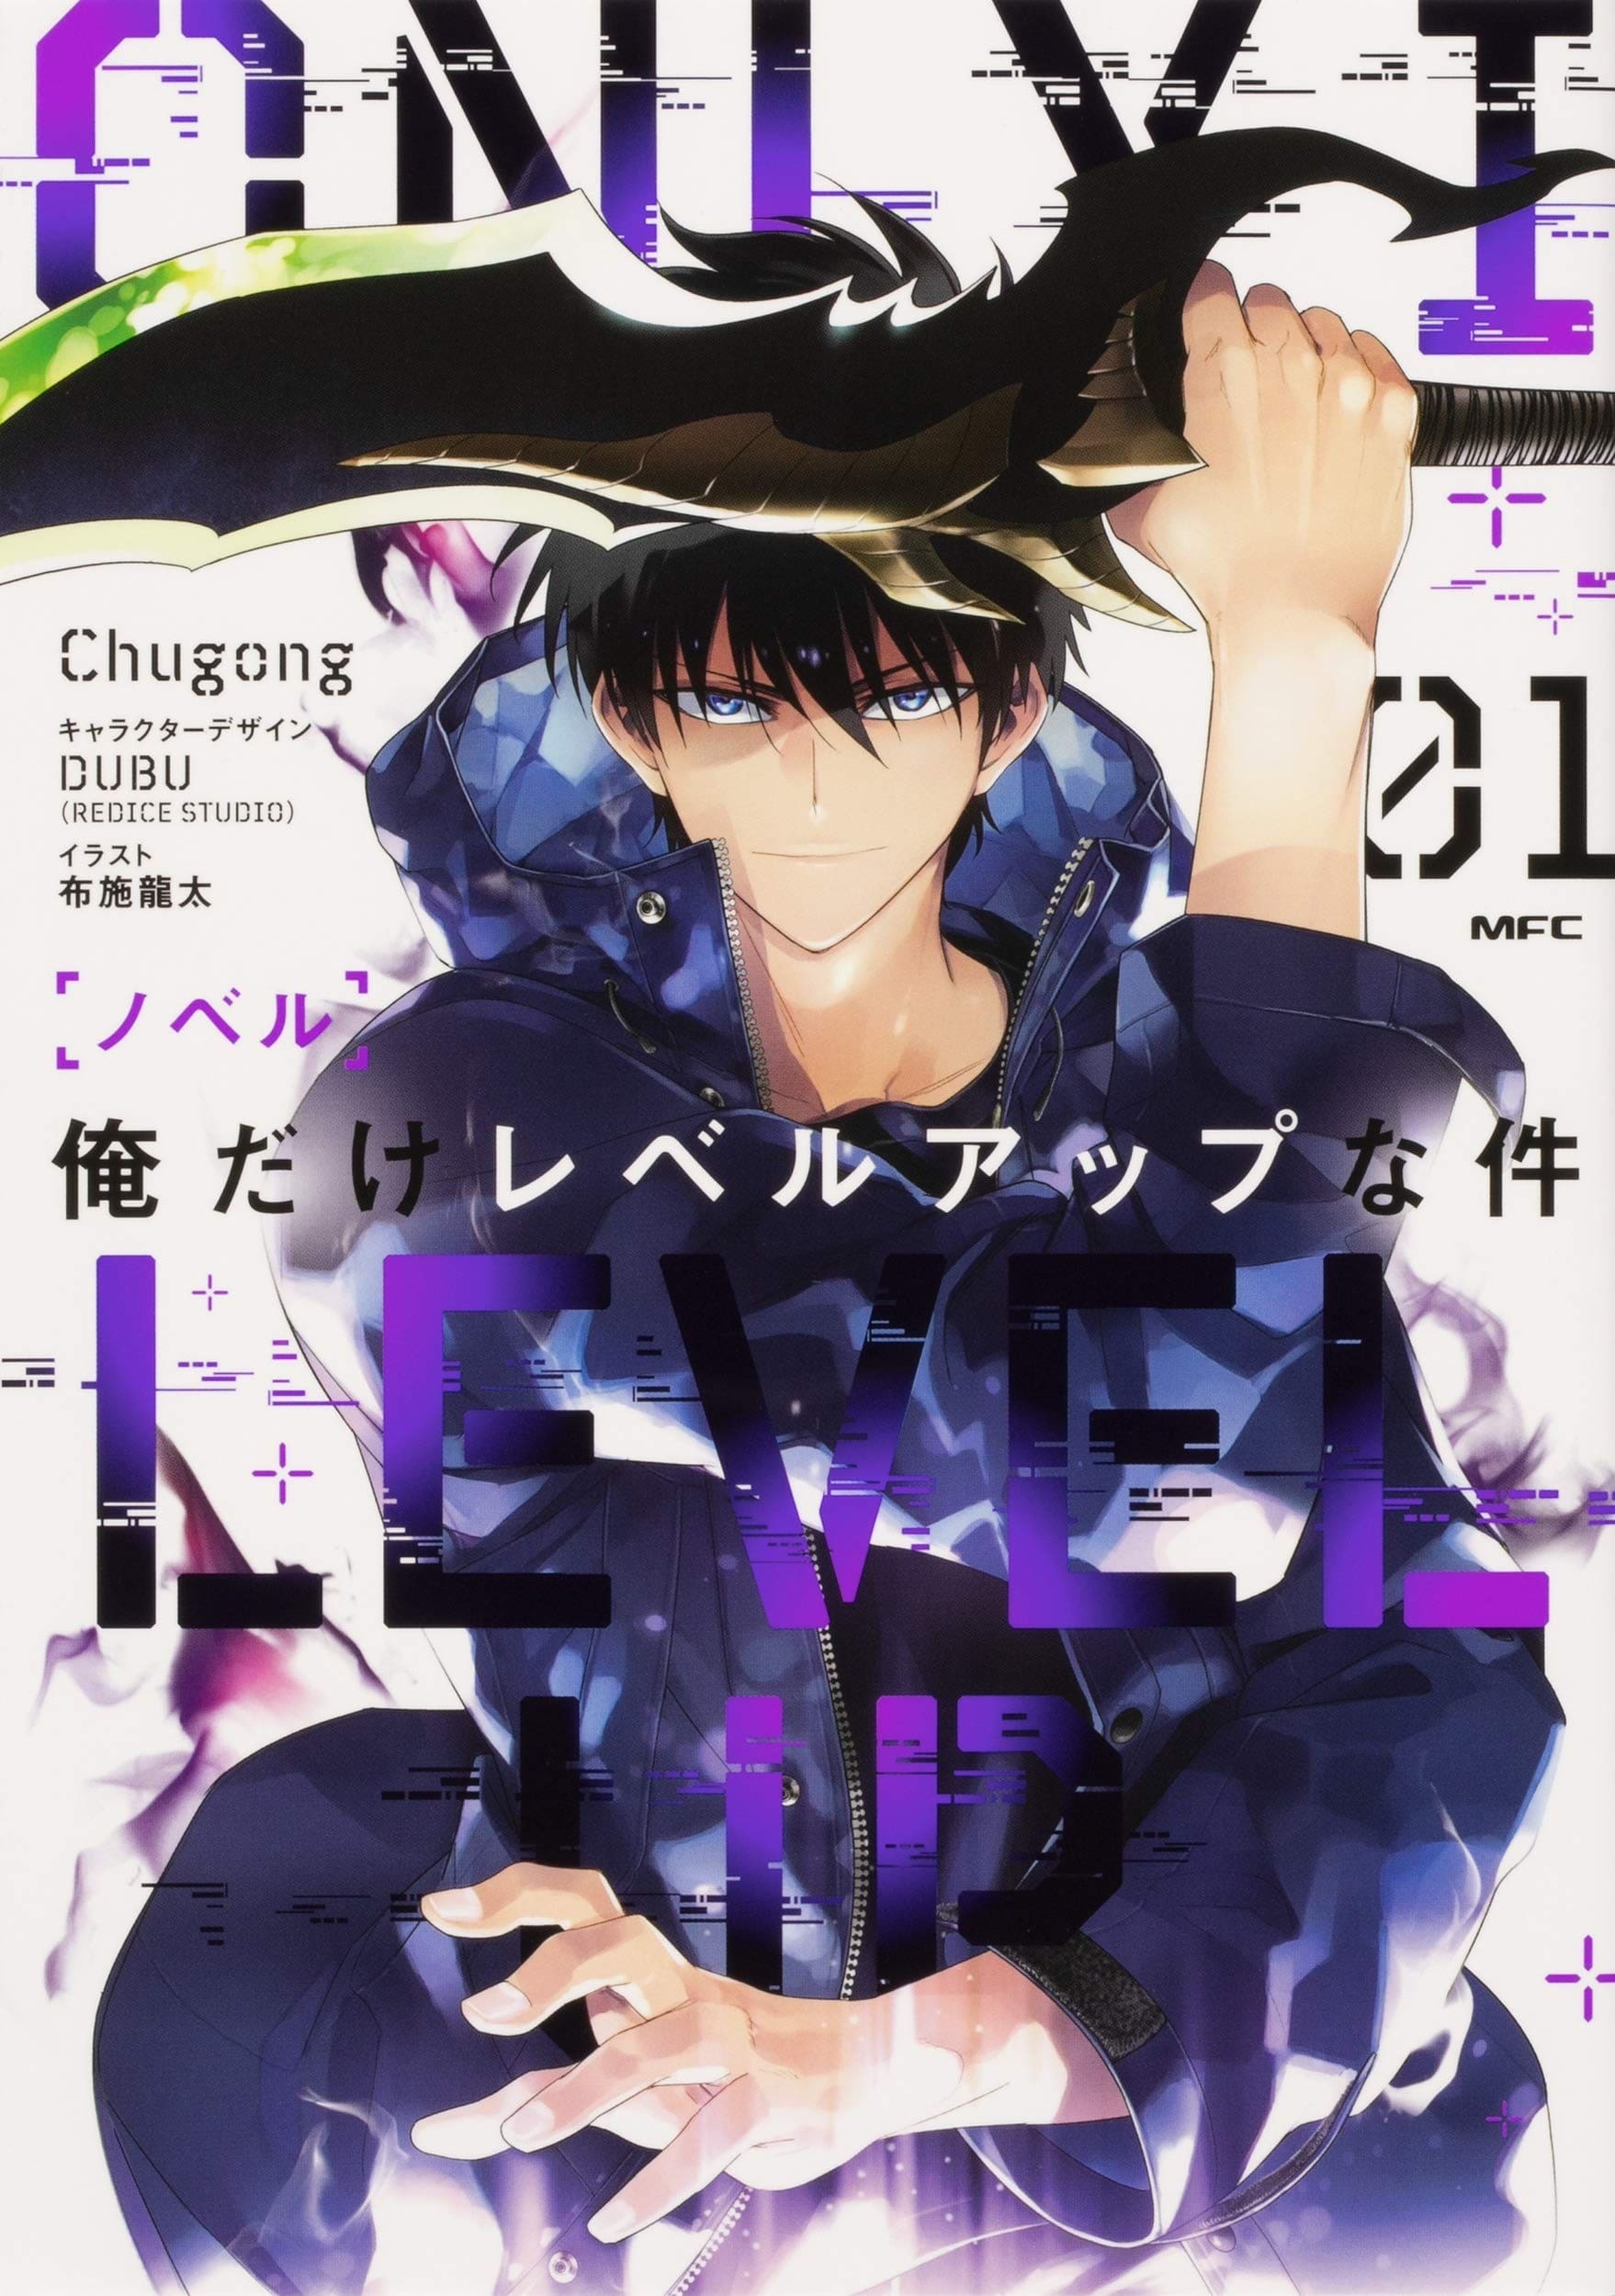 Cover für Solo Leveling Japanese Light Novel wird veröffentlicht